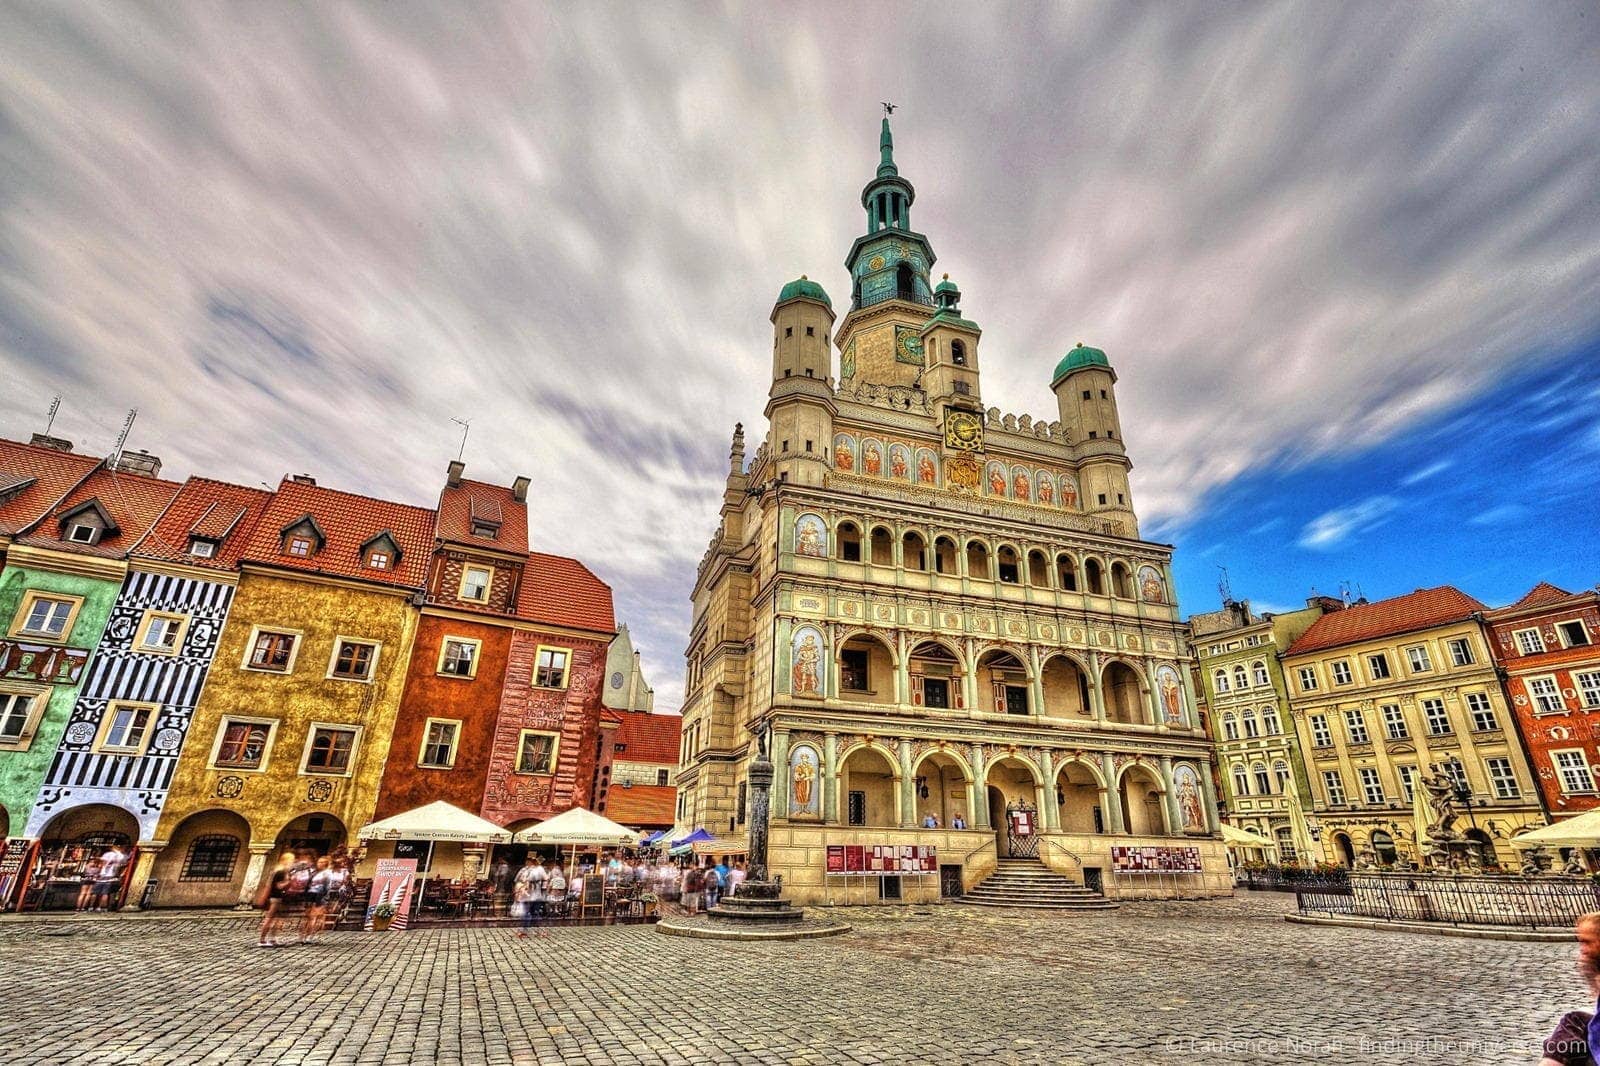 Seven Summer Festivals in Poznan